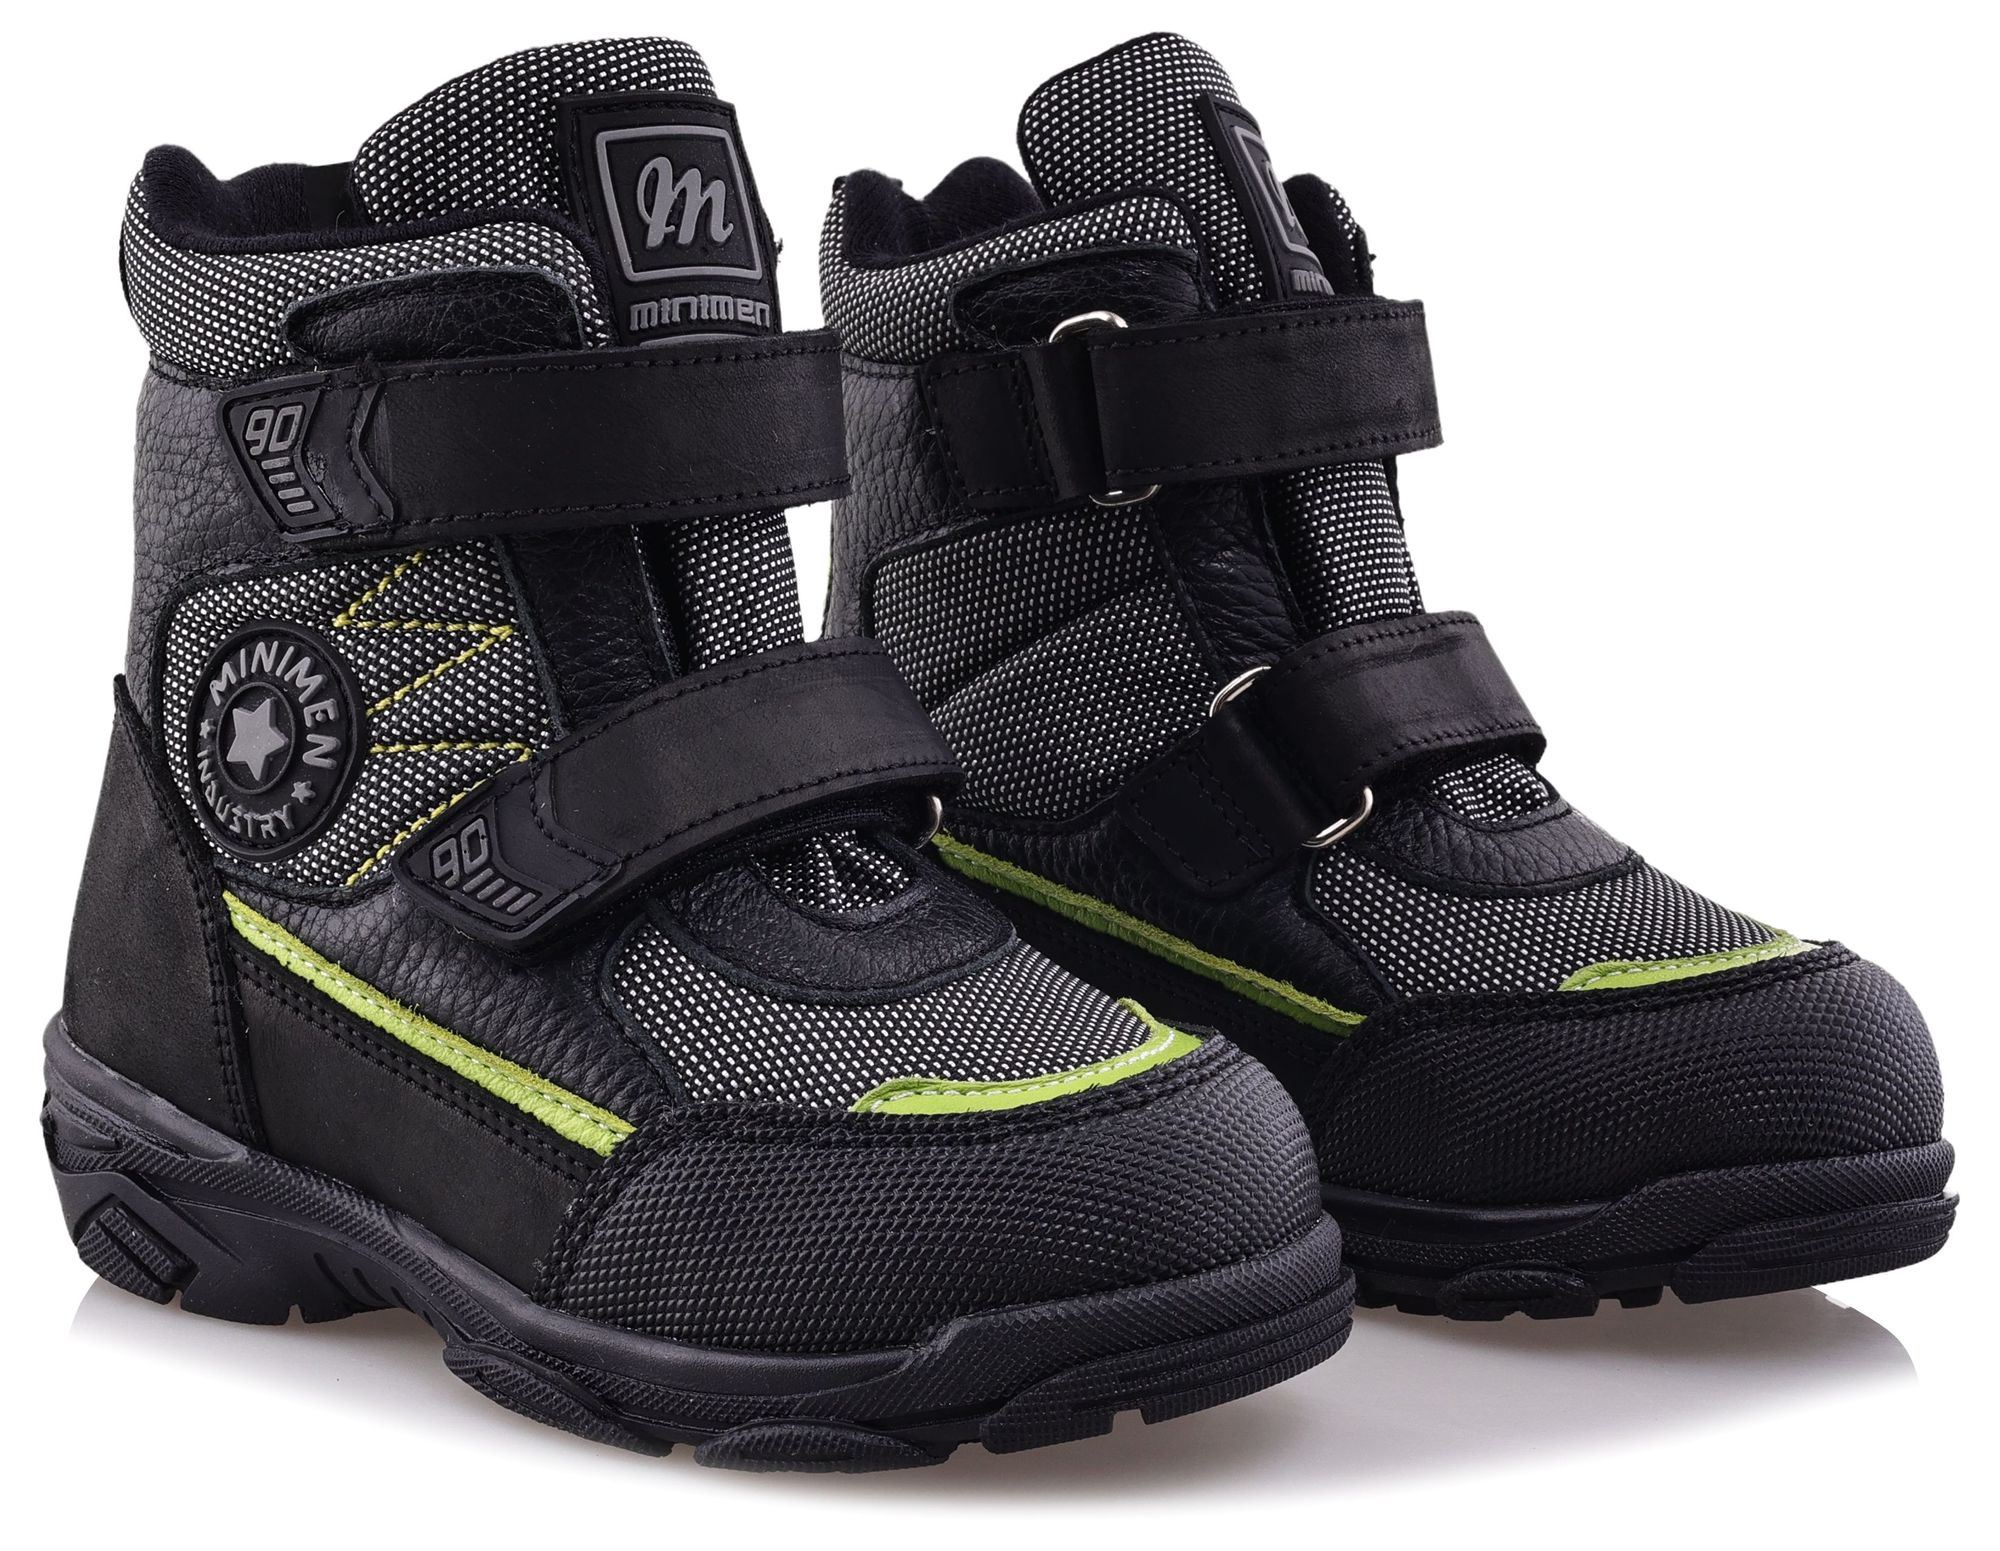 Ботинки Minimen для мальчиков, чёрные, размер 35, 2657-64-23B-02